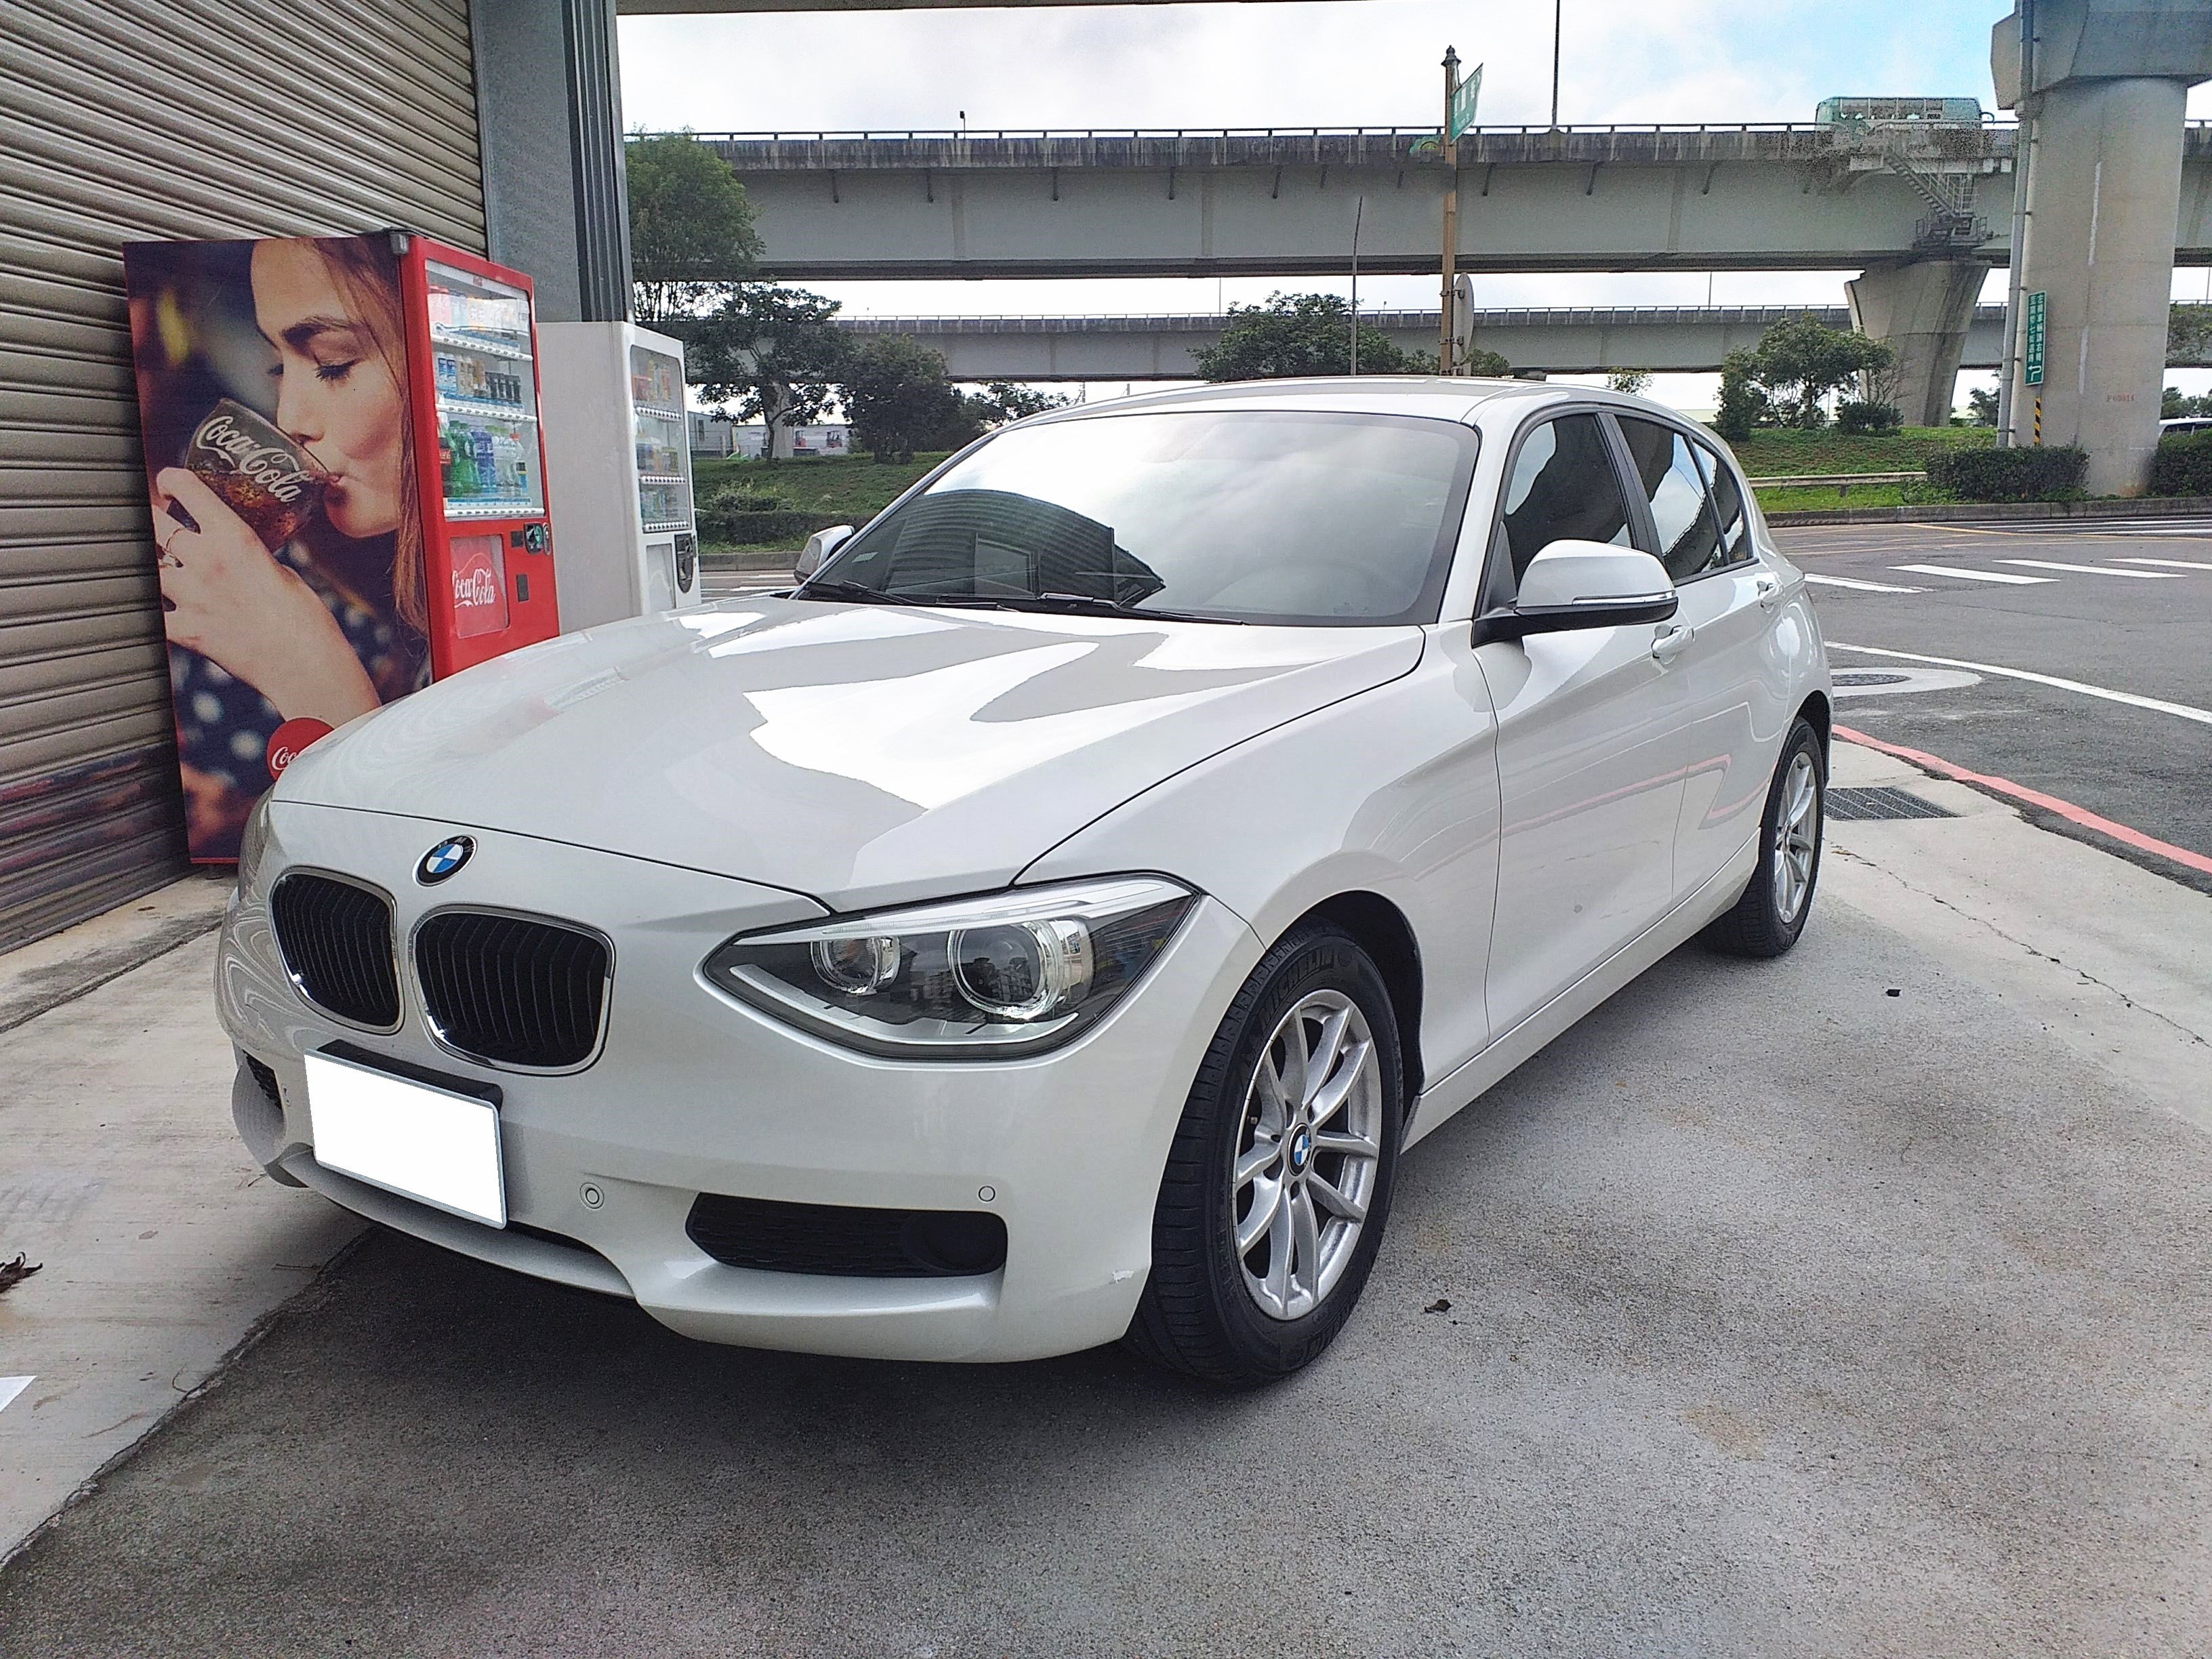 2014 BMW 寶馬 1-series